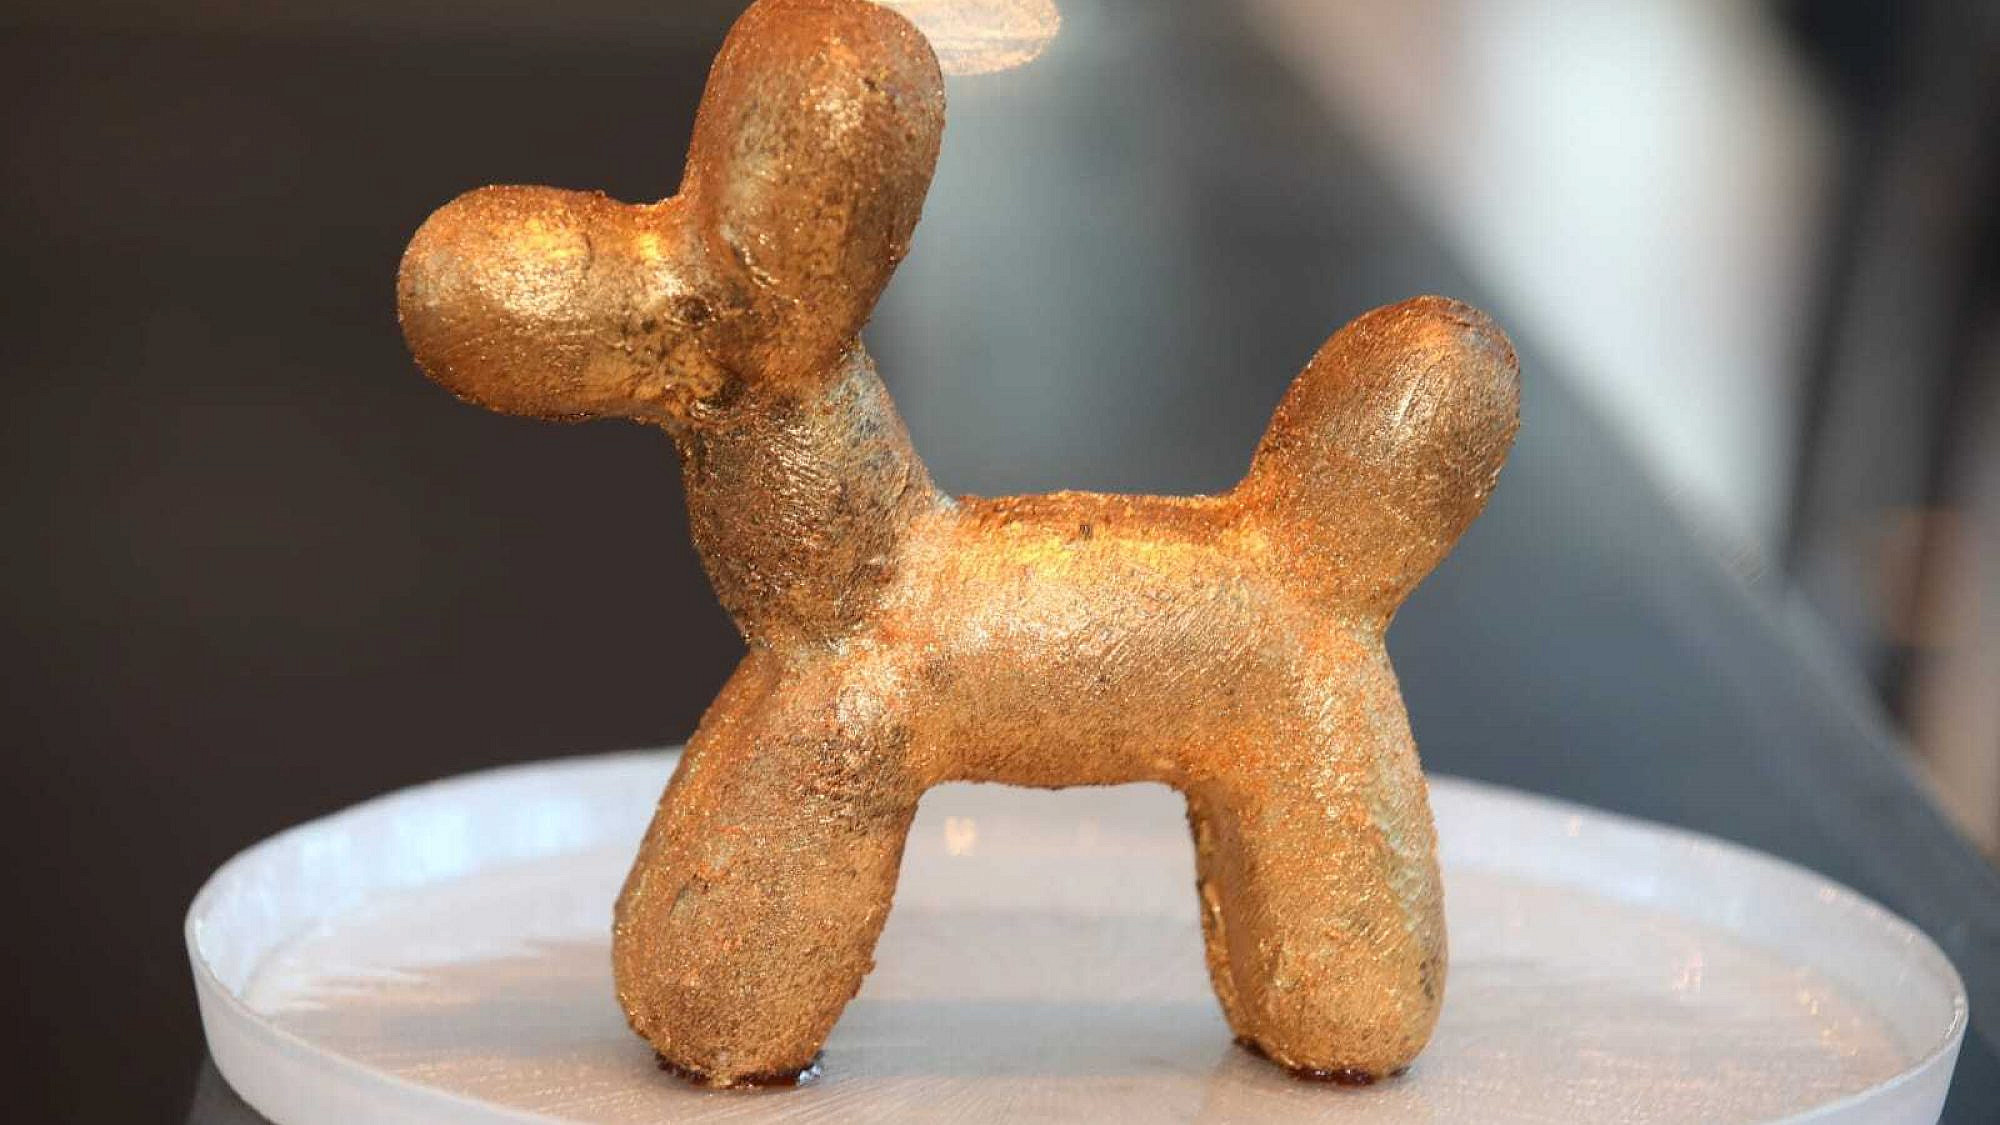 כלב השוקולד של קונס, לכאורה. צילום: איציק בירן